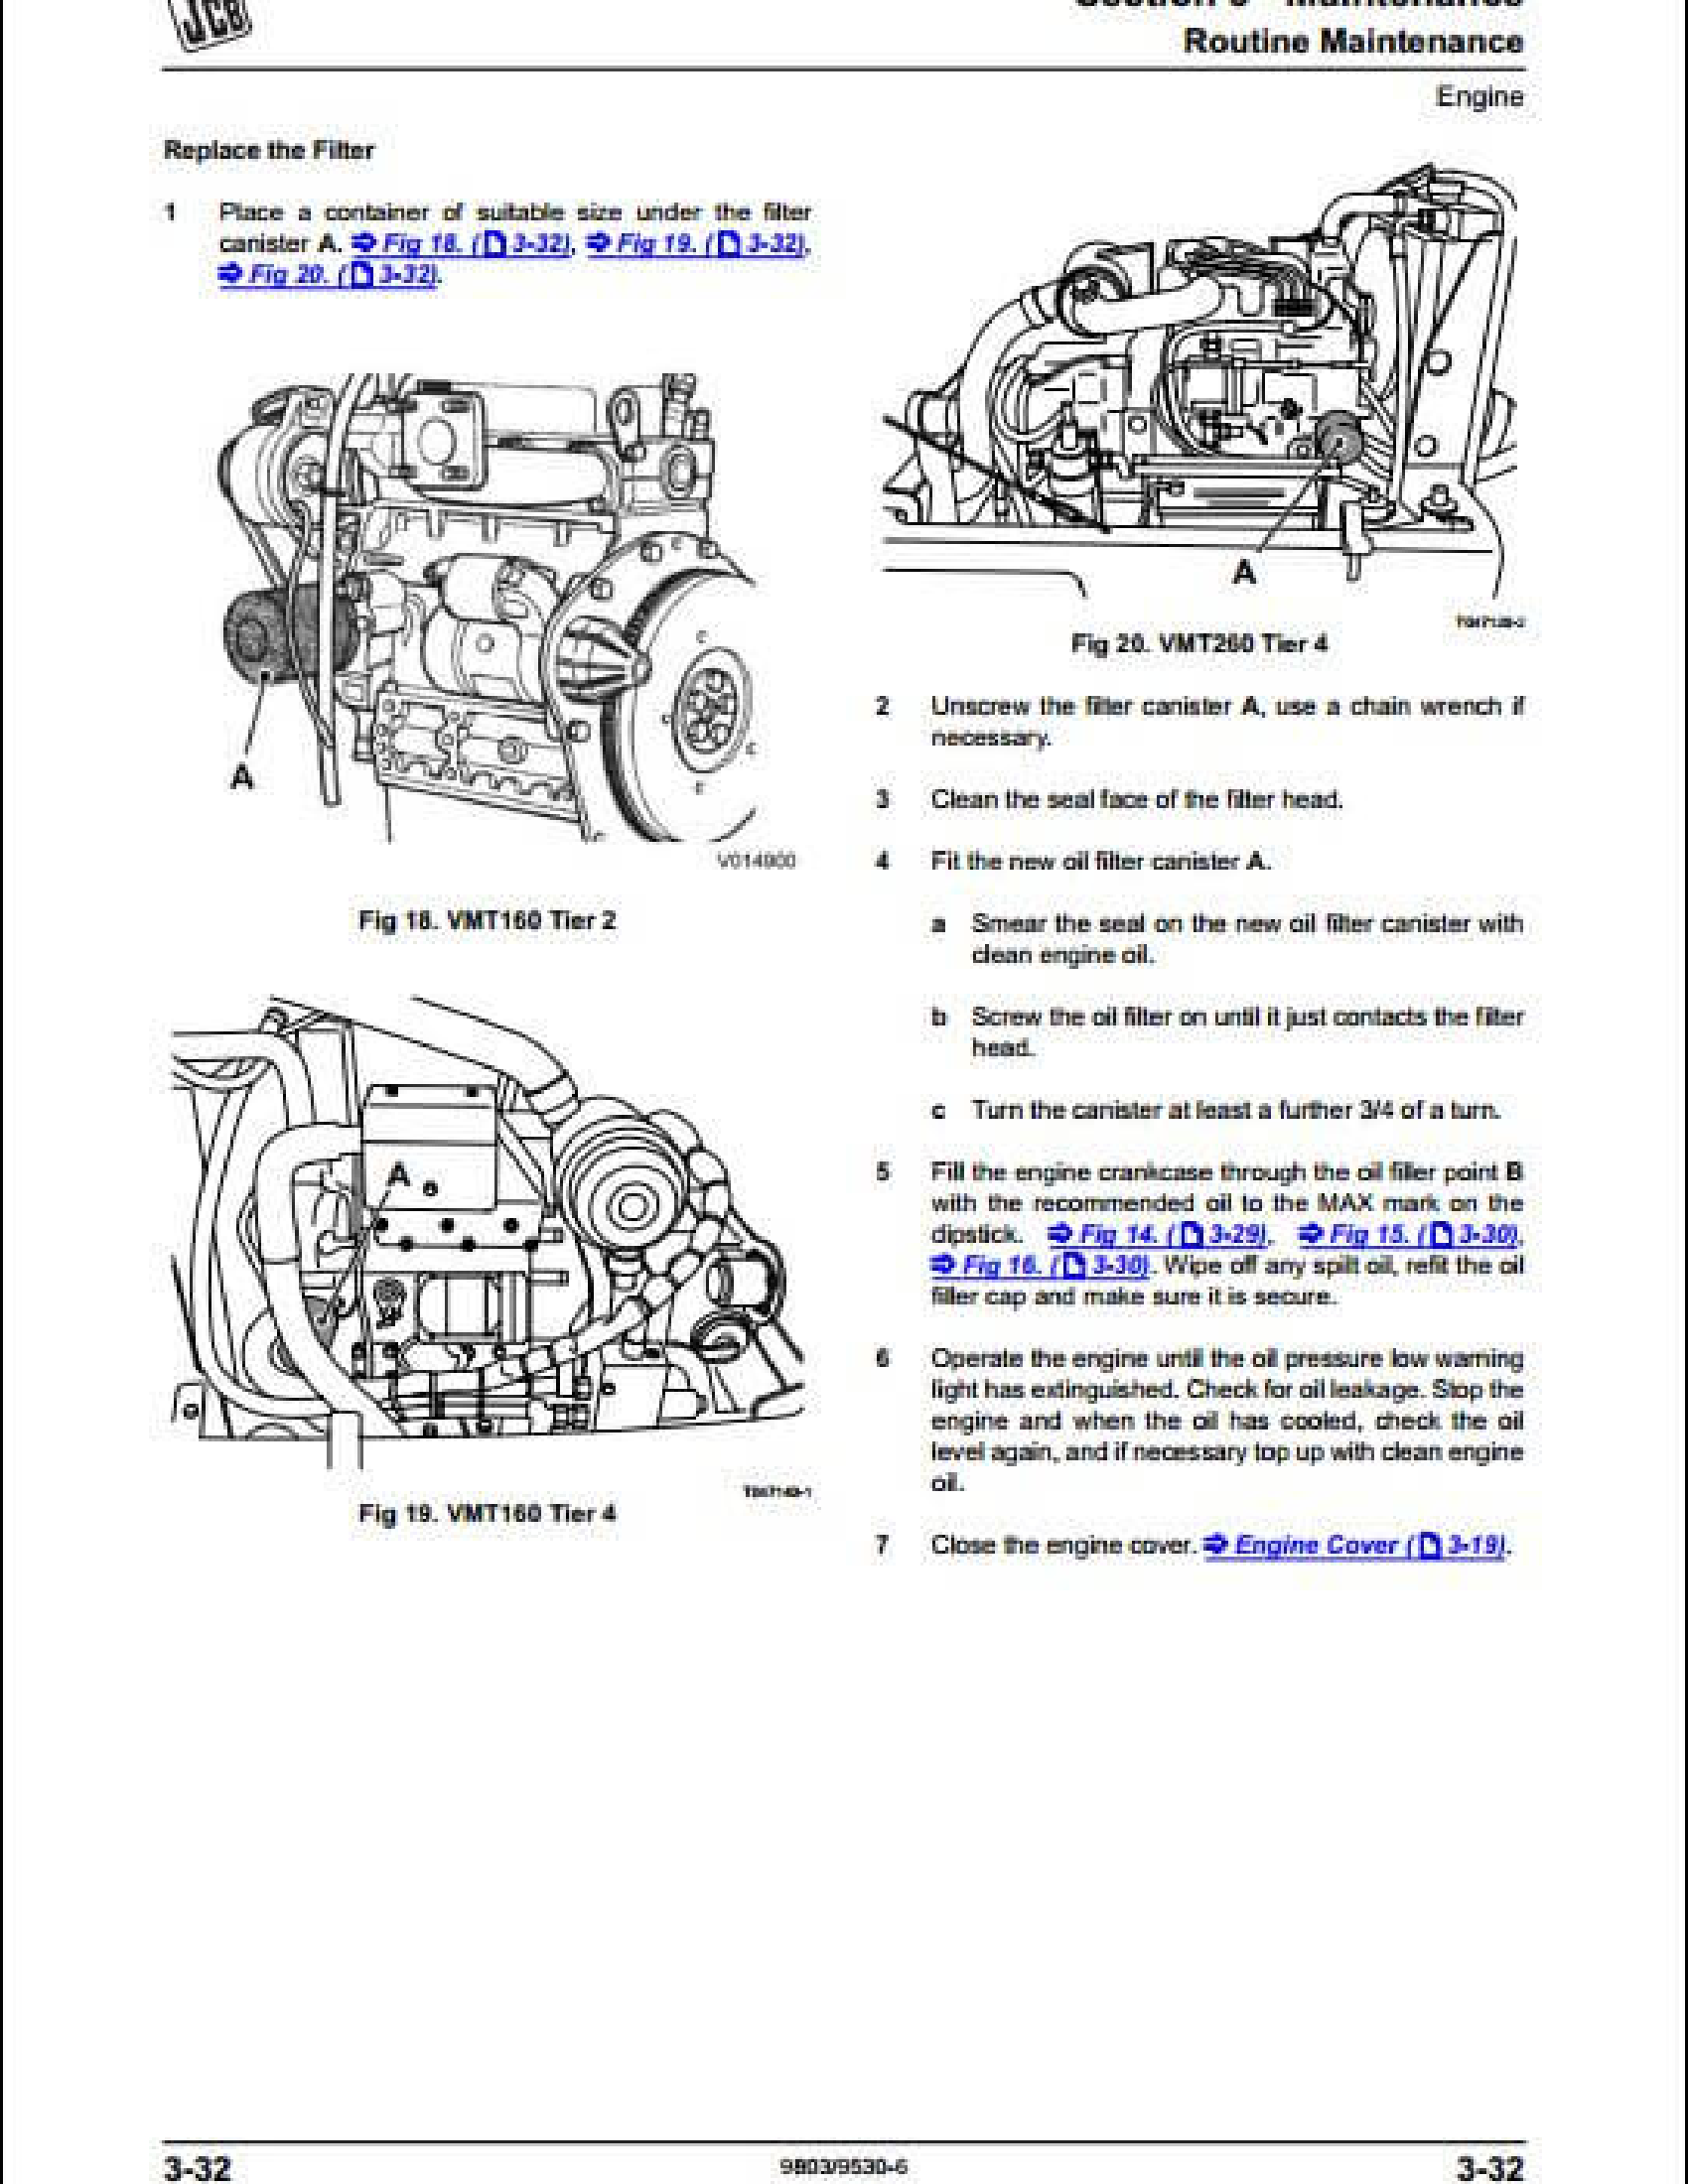 JCB TM310 Wastemaster Loader manual